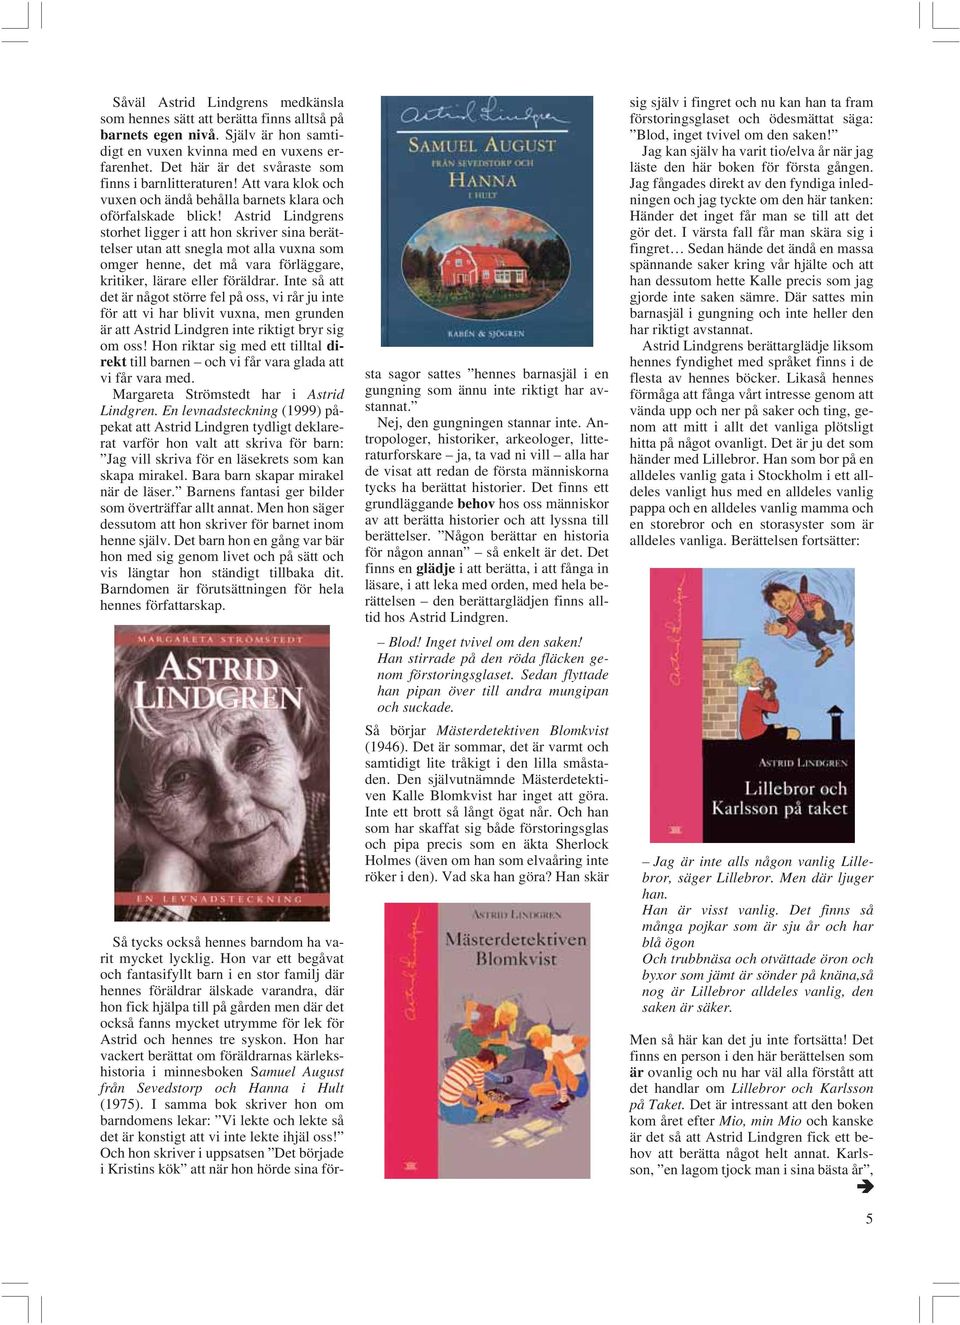 Astrid Lindgrens storhet ligger i att hon skriver sina berättelser utan att snegla mot alla vuxna som omger henne, det må vara förläggare, kritiker, lärare eller föräldrar.